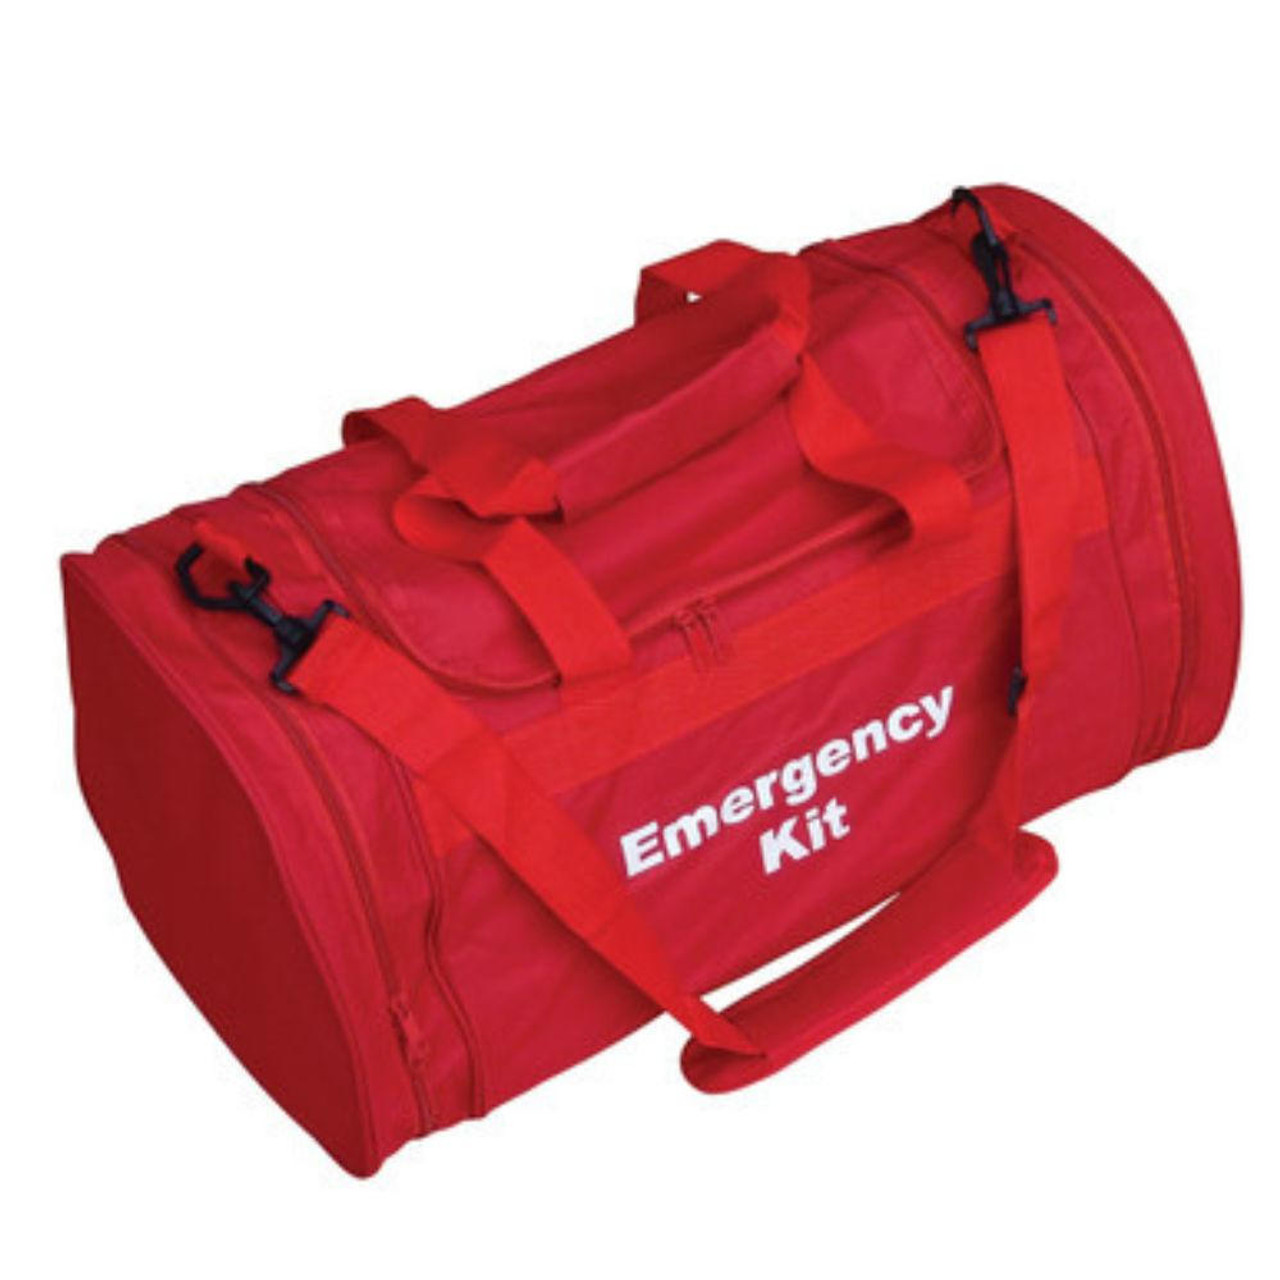 100 Foil Blankets in Emergency Kit Bag with Shoulder Strap